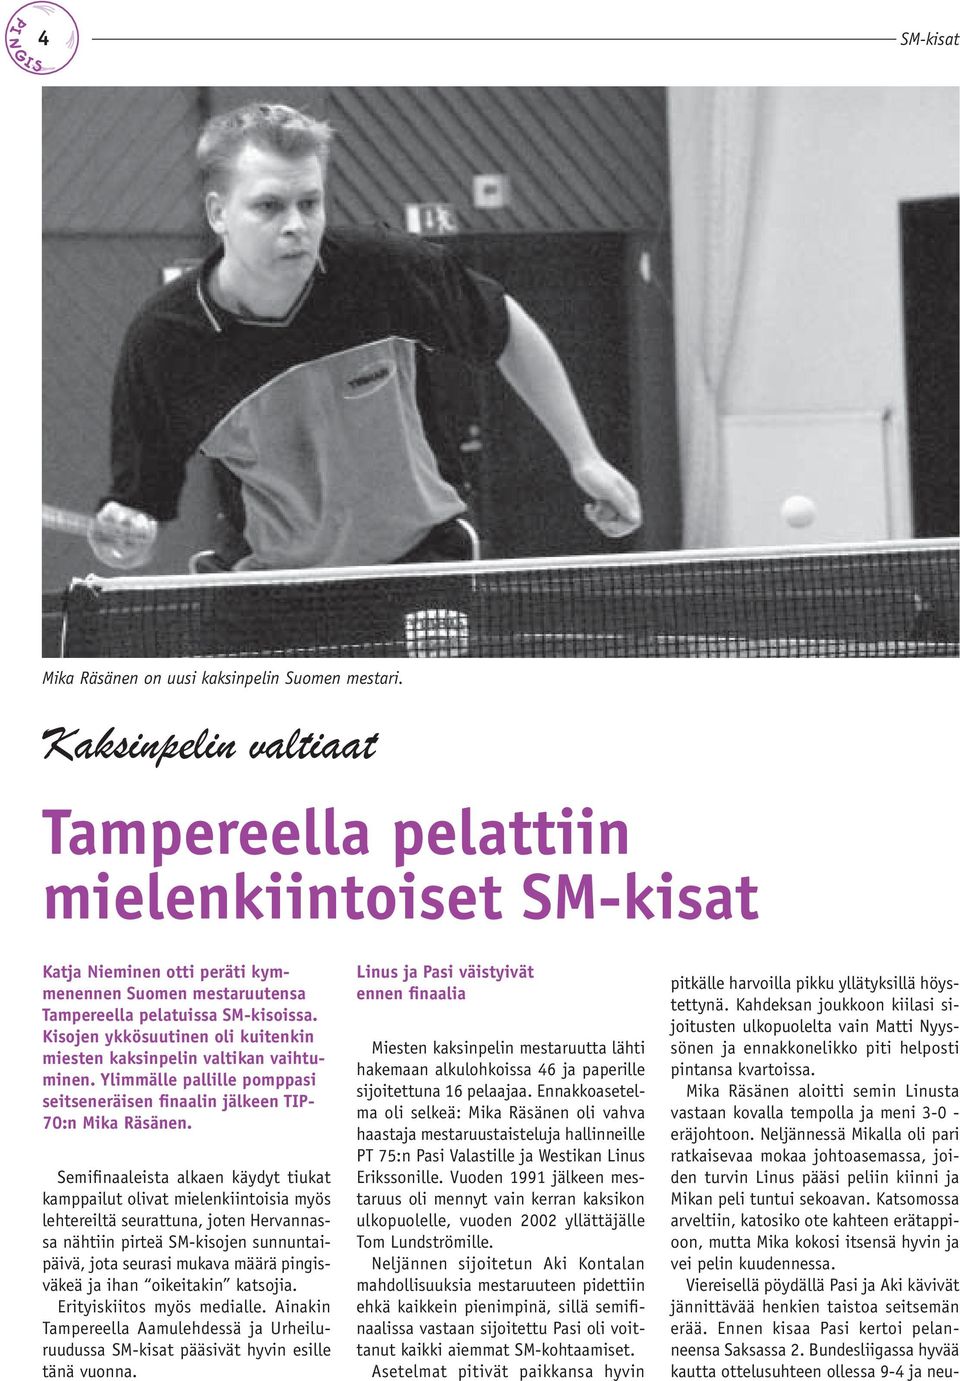 Kisojen ykkösuutinen oli kuitenkin miesten kaksinpelin valtikan vaihtuminen. Ylimmälle pallille pomppasi seitseneräisen finaalin jälkeen TIP- 70:n Mika Räsänen.